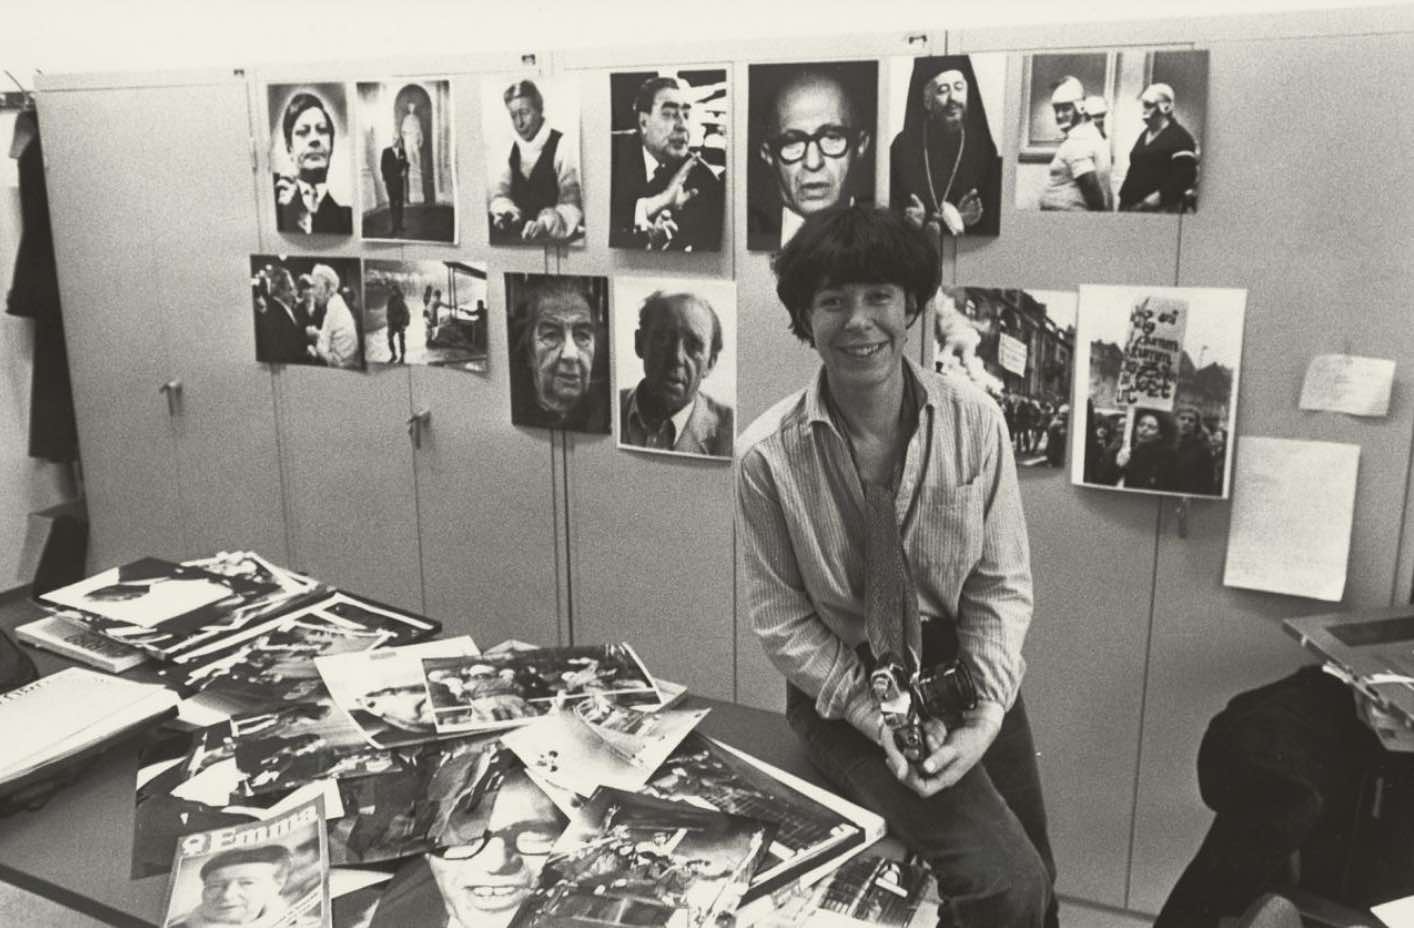 Bild vergrössern: Schwarz-weiß Fotografie, auf der eine Frau mit kurzen dunklen Haaren auf einem Tisch sitzt mit vielen Fotos und Magazinen, im Hintergrund Portäts an der Wand